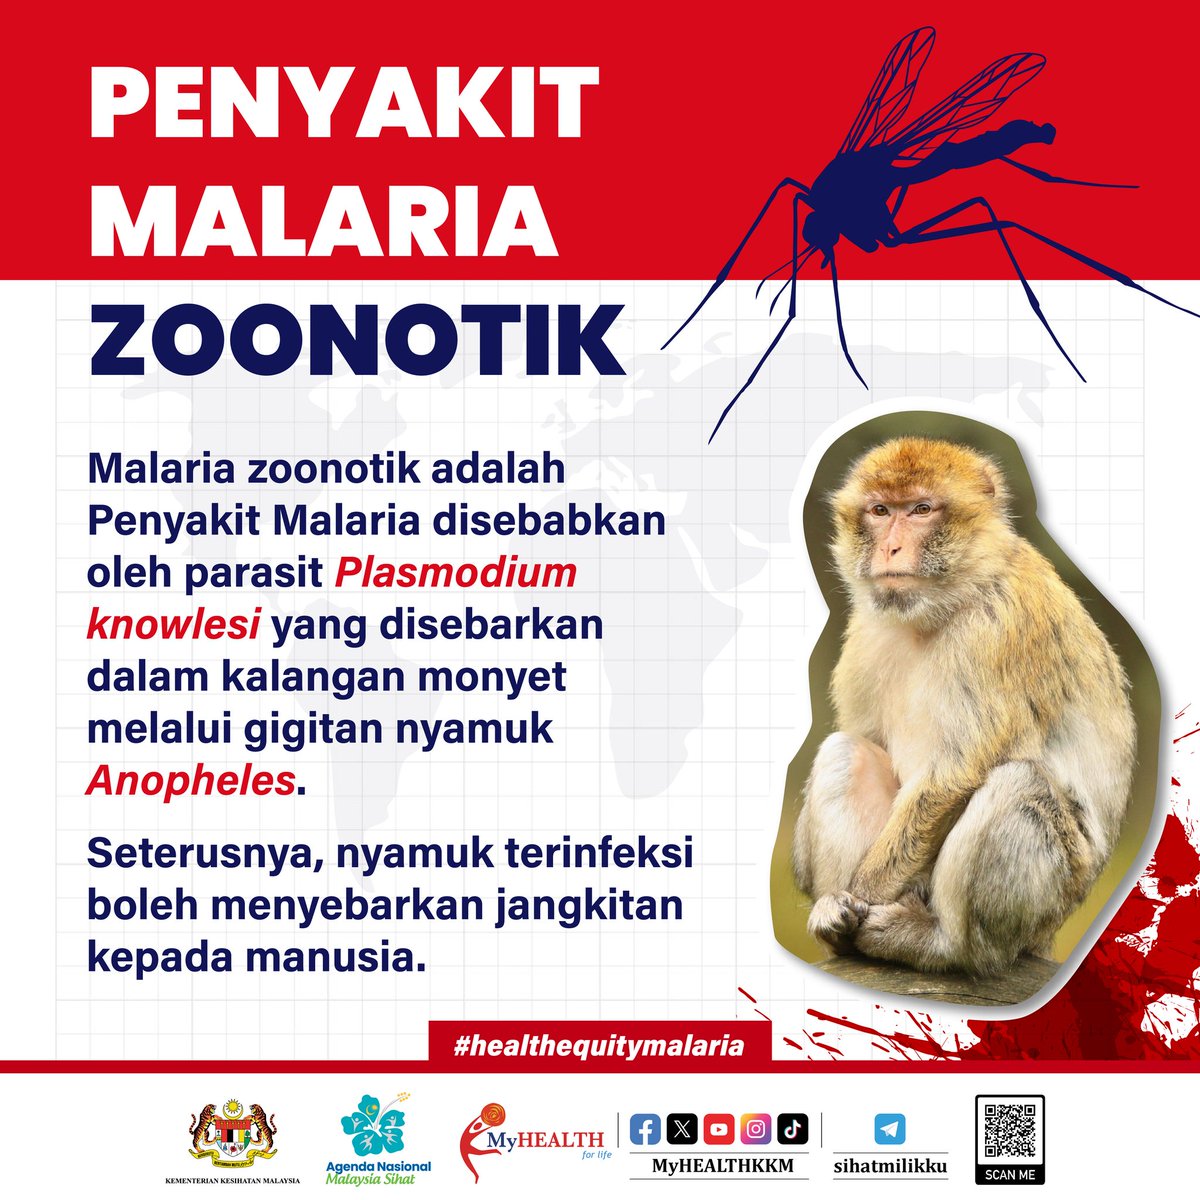 Penyakit Malaria zoonotik adalah penyakit Malaria disebabkan oleh parasit Plasmodium knowlesi yang disebarkan dalam kalangan monyet melalui gigitan nyamuk Anopheles.

Nyamuk terinfeksi boleh menyebarkan jangkitan kepada manusia.

#ANMS #healthequitymalaria #sihatmilikku